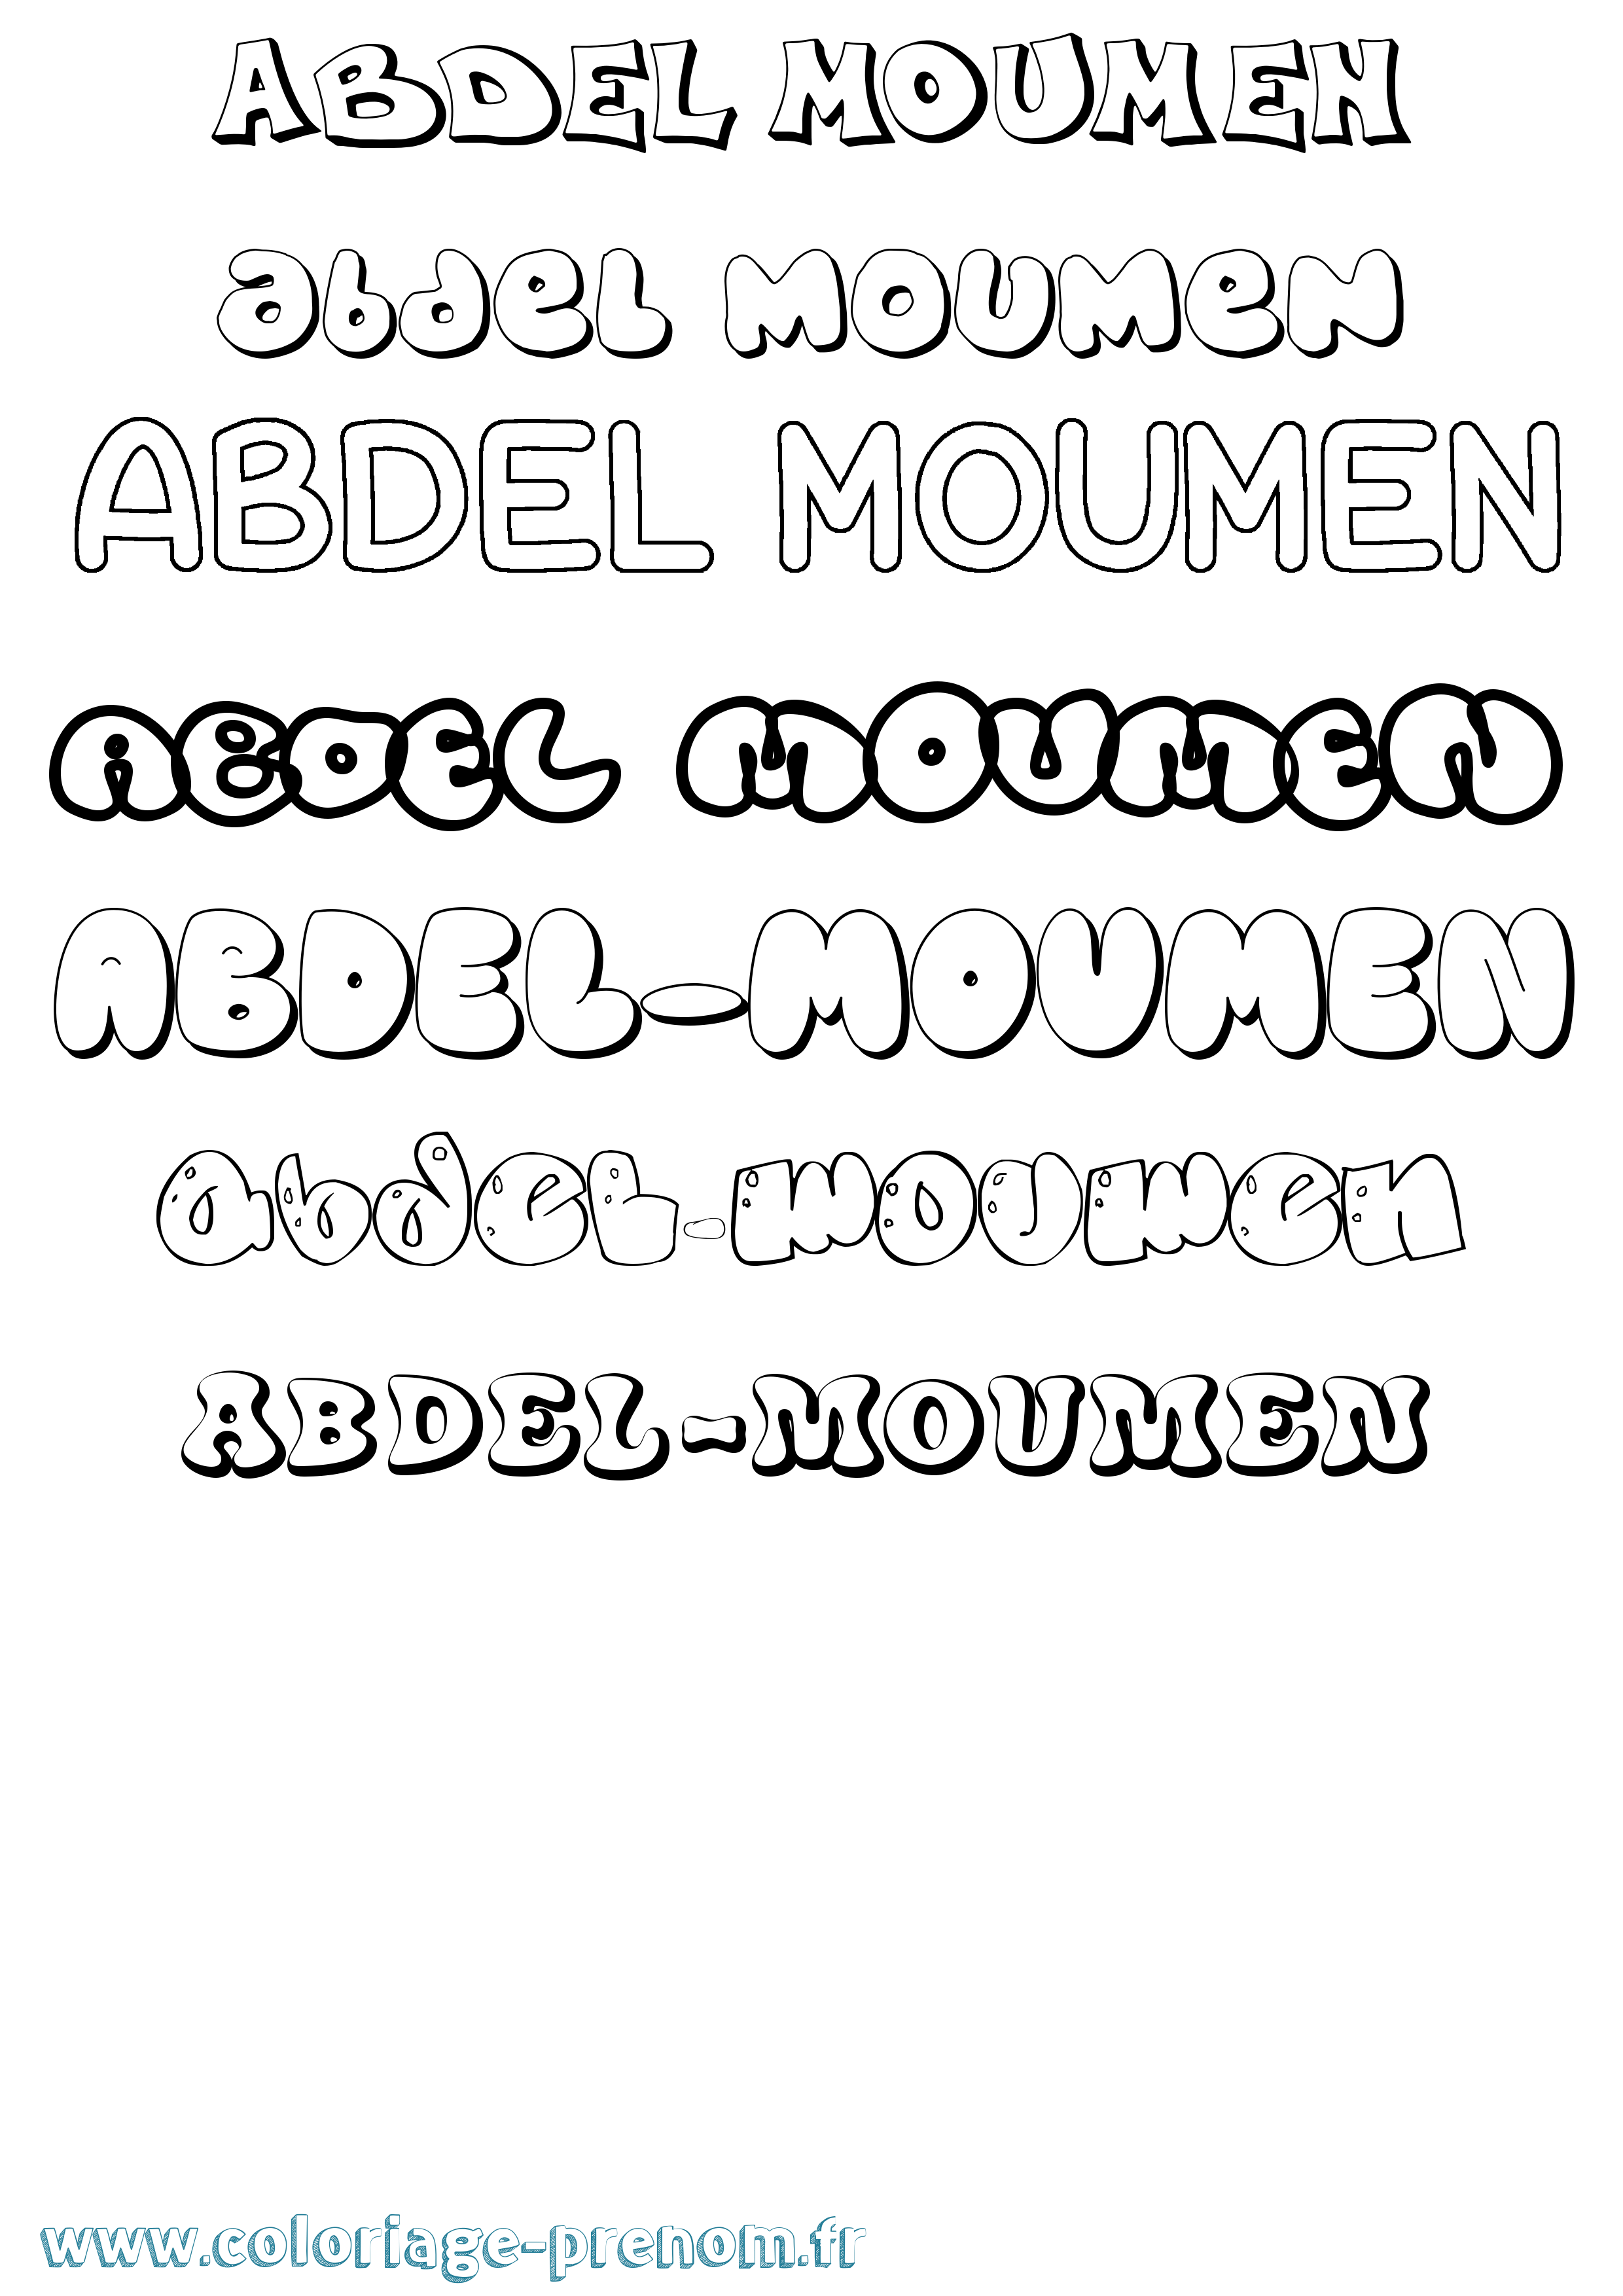 Coloriage prénom Abdel-Moumen Bubble